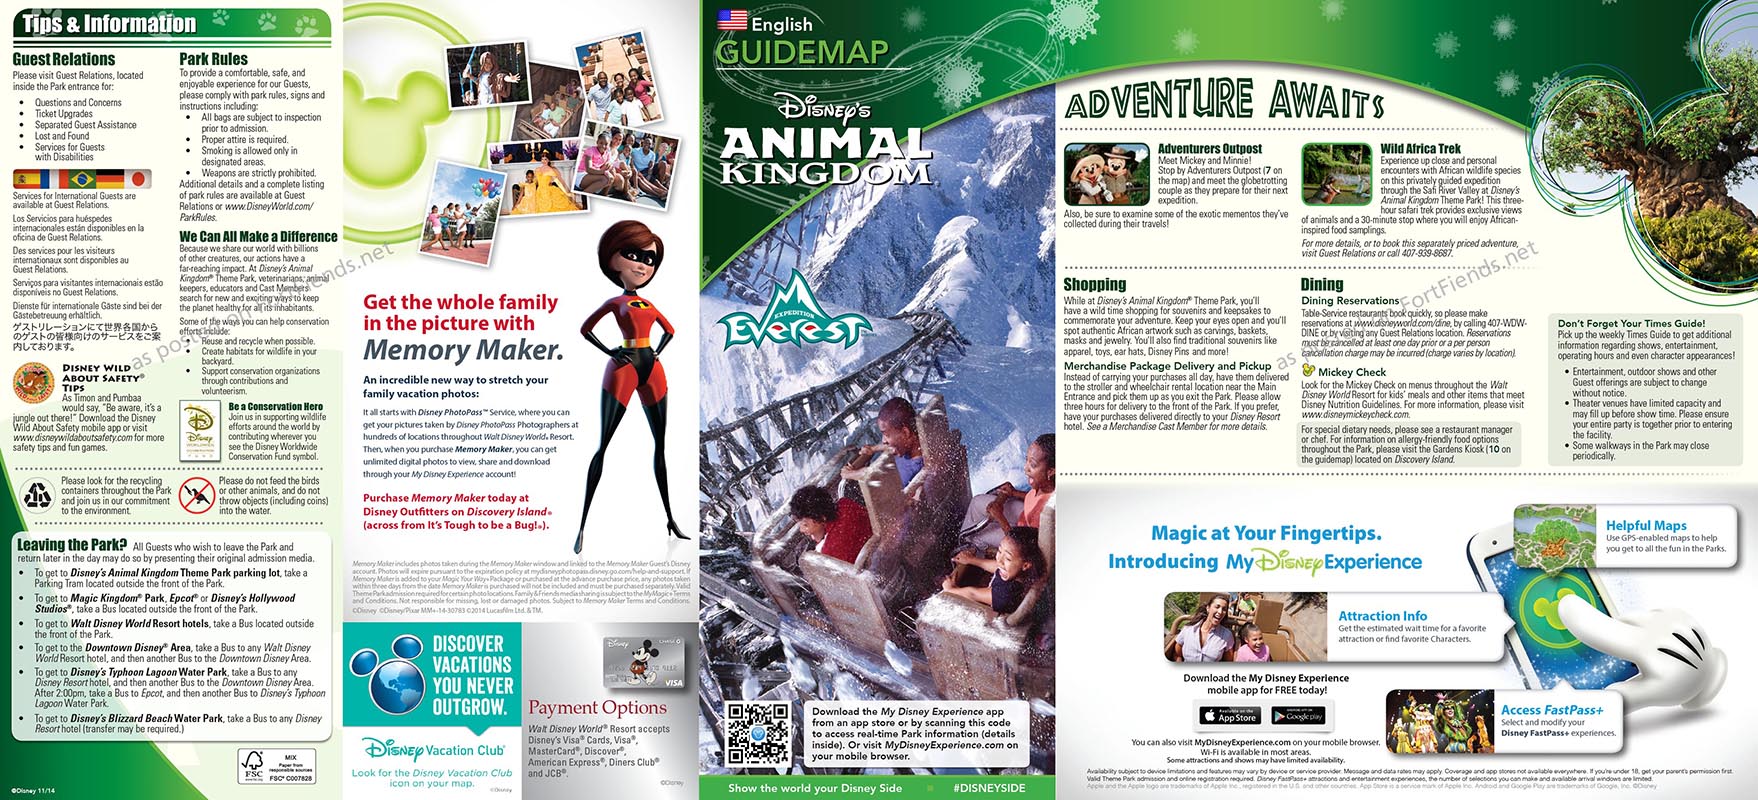 GuideMap2014-12-AK1.jpg